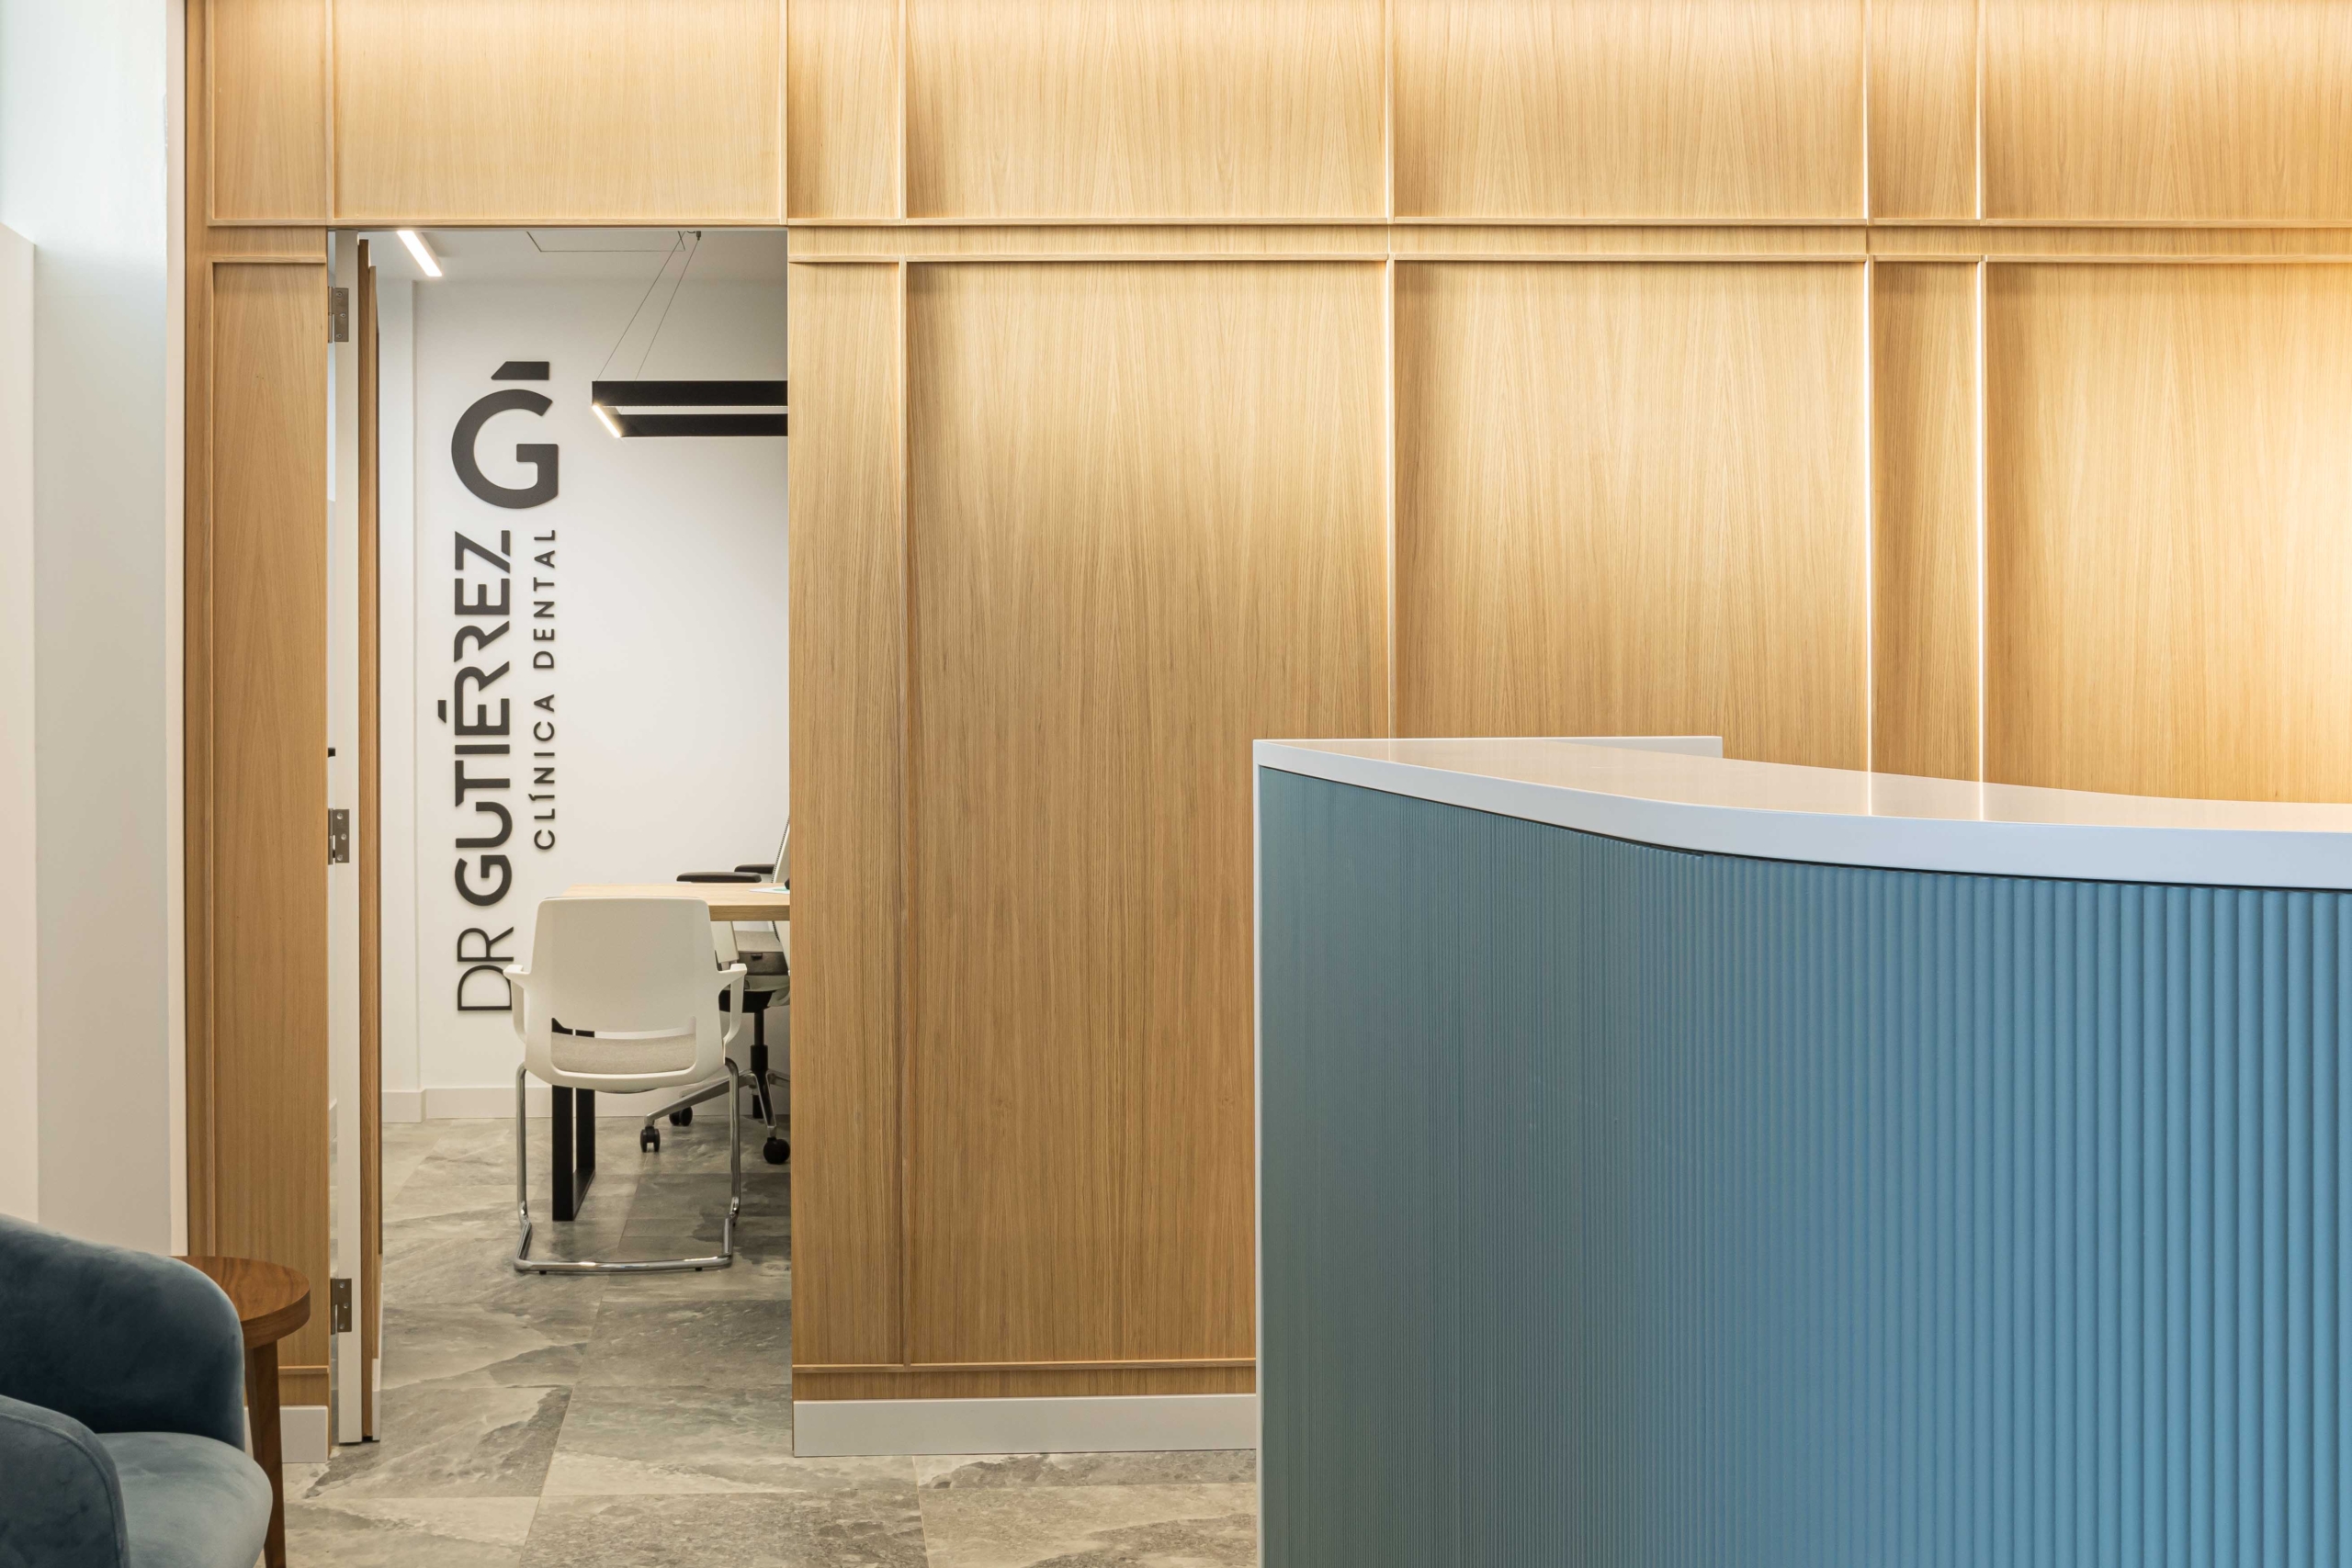 Sala de recepción y sala de reuniones con acabado en madera y con ordenador y diseño logo con nombre ¨Dr Gutierrez¨